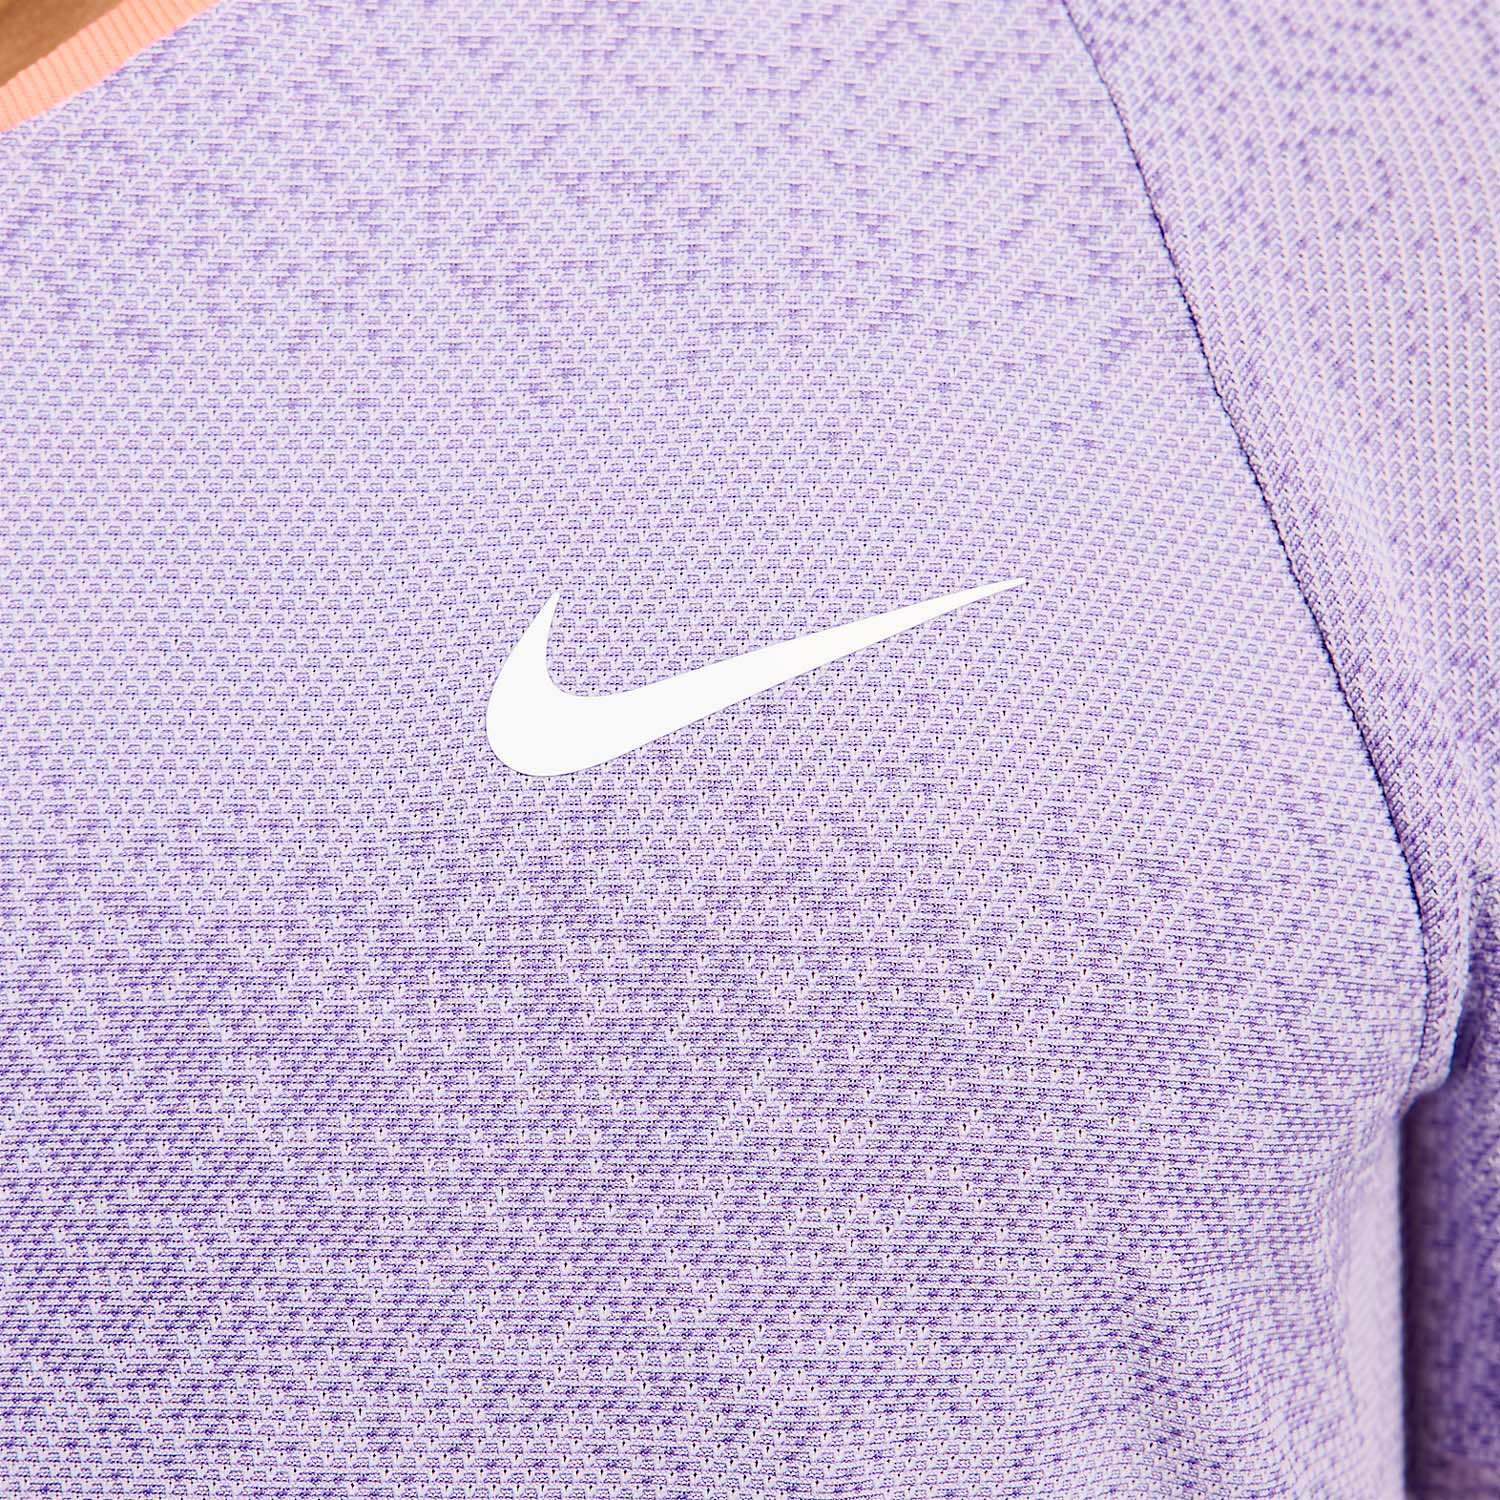 Nike Rafa T-Shirt - Lilac Bloom/Bright Mango/White